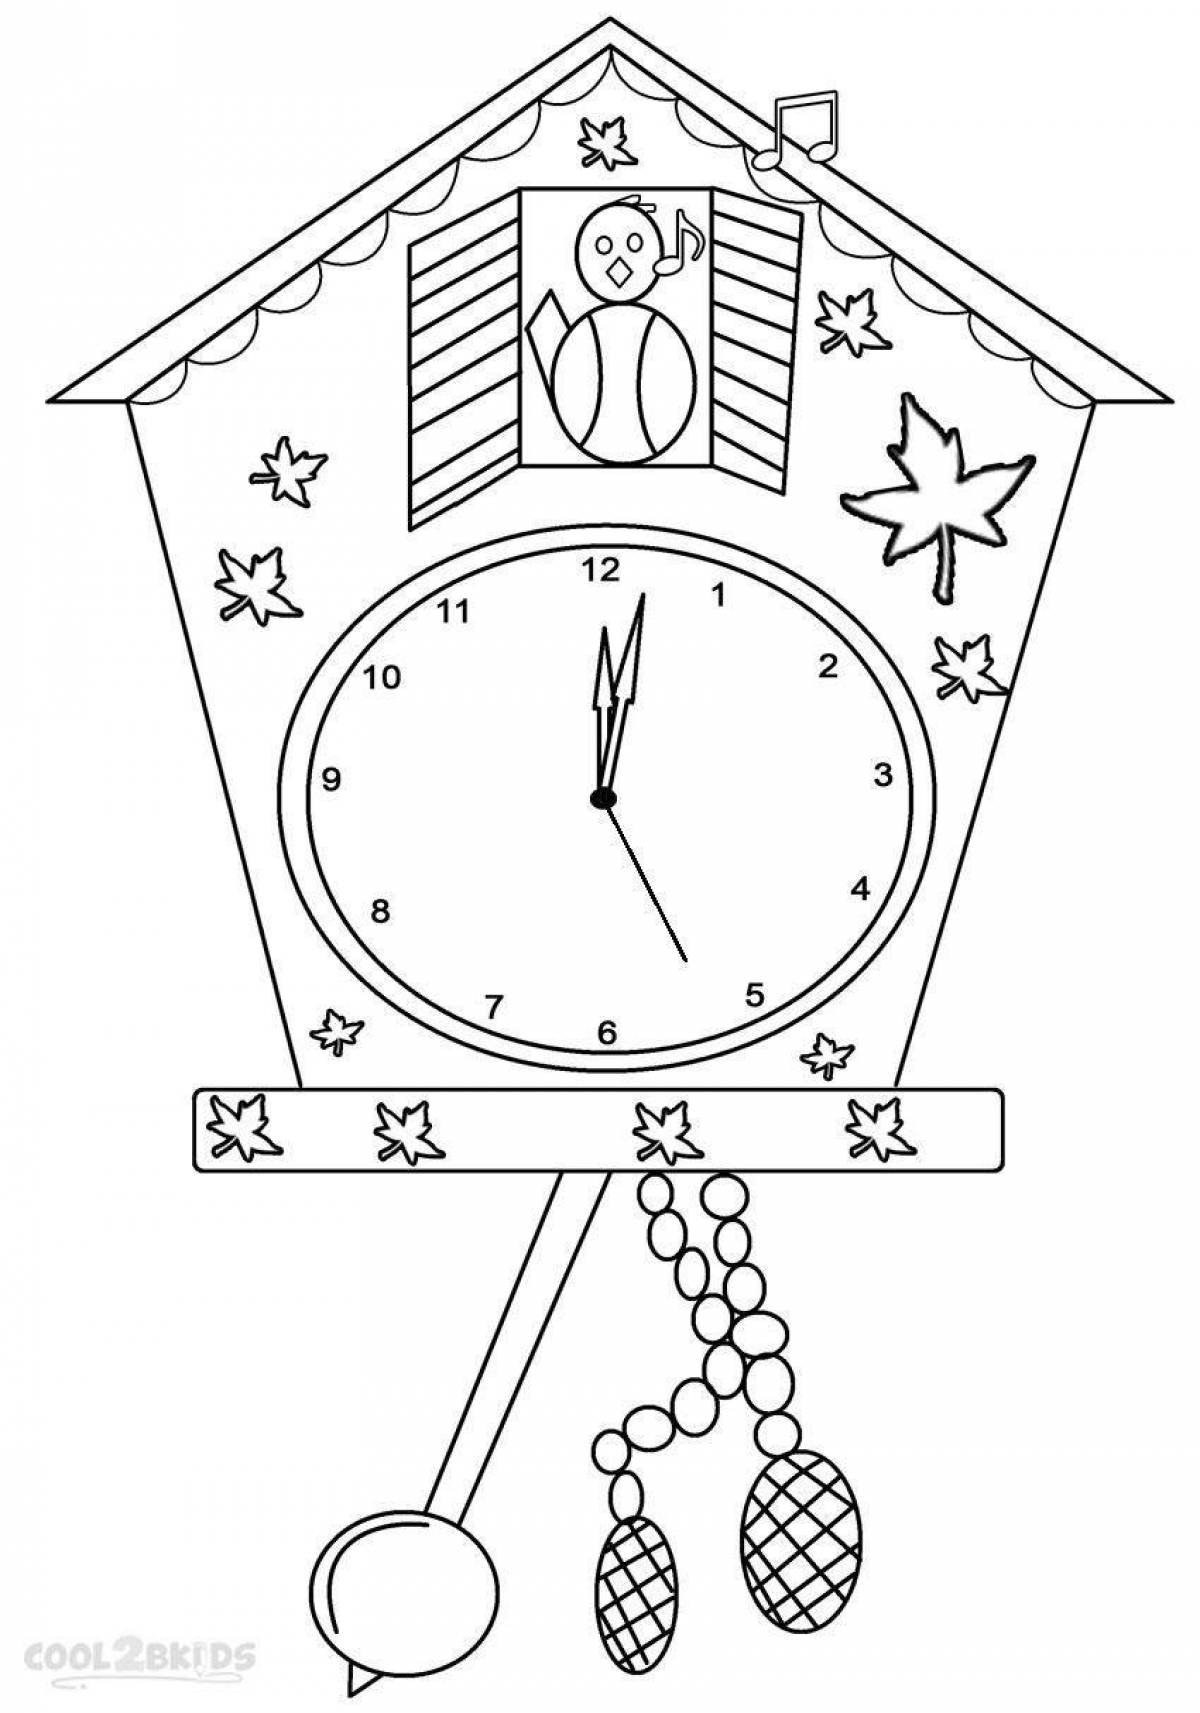 Раскраски часов для детей. Часы раскраска. Часы раскраска для детей. Раскраска часов для детей. Часы новогодние.